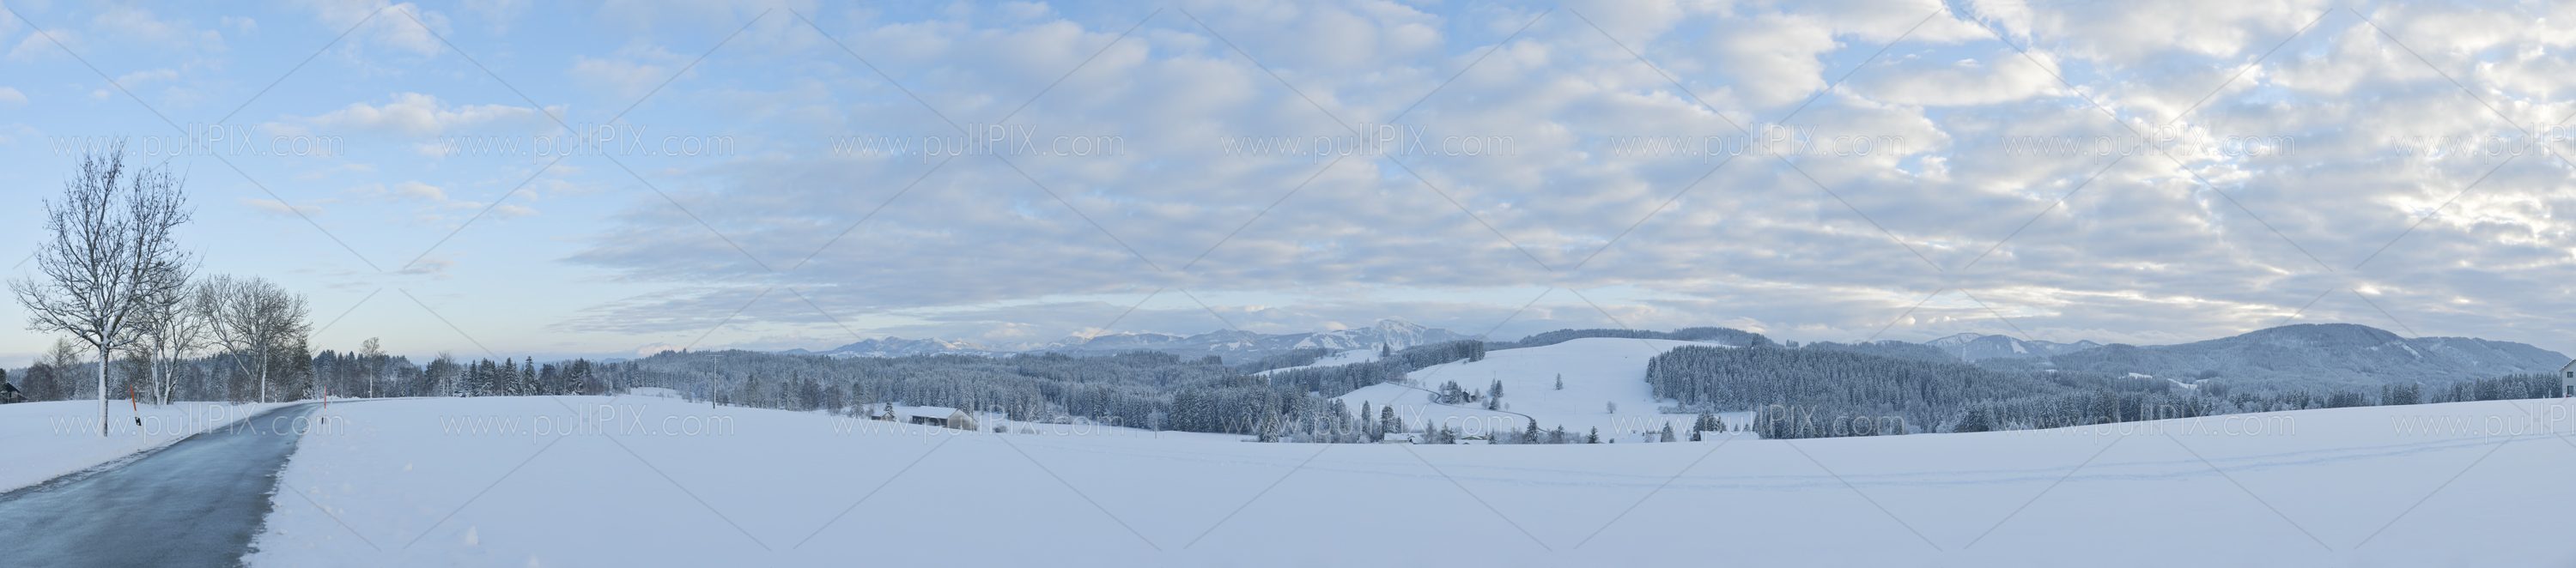 Preview winterliches allgaeu_15.jpg